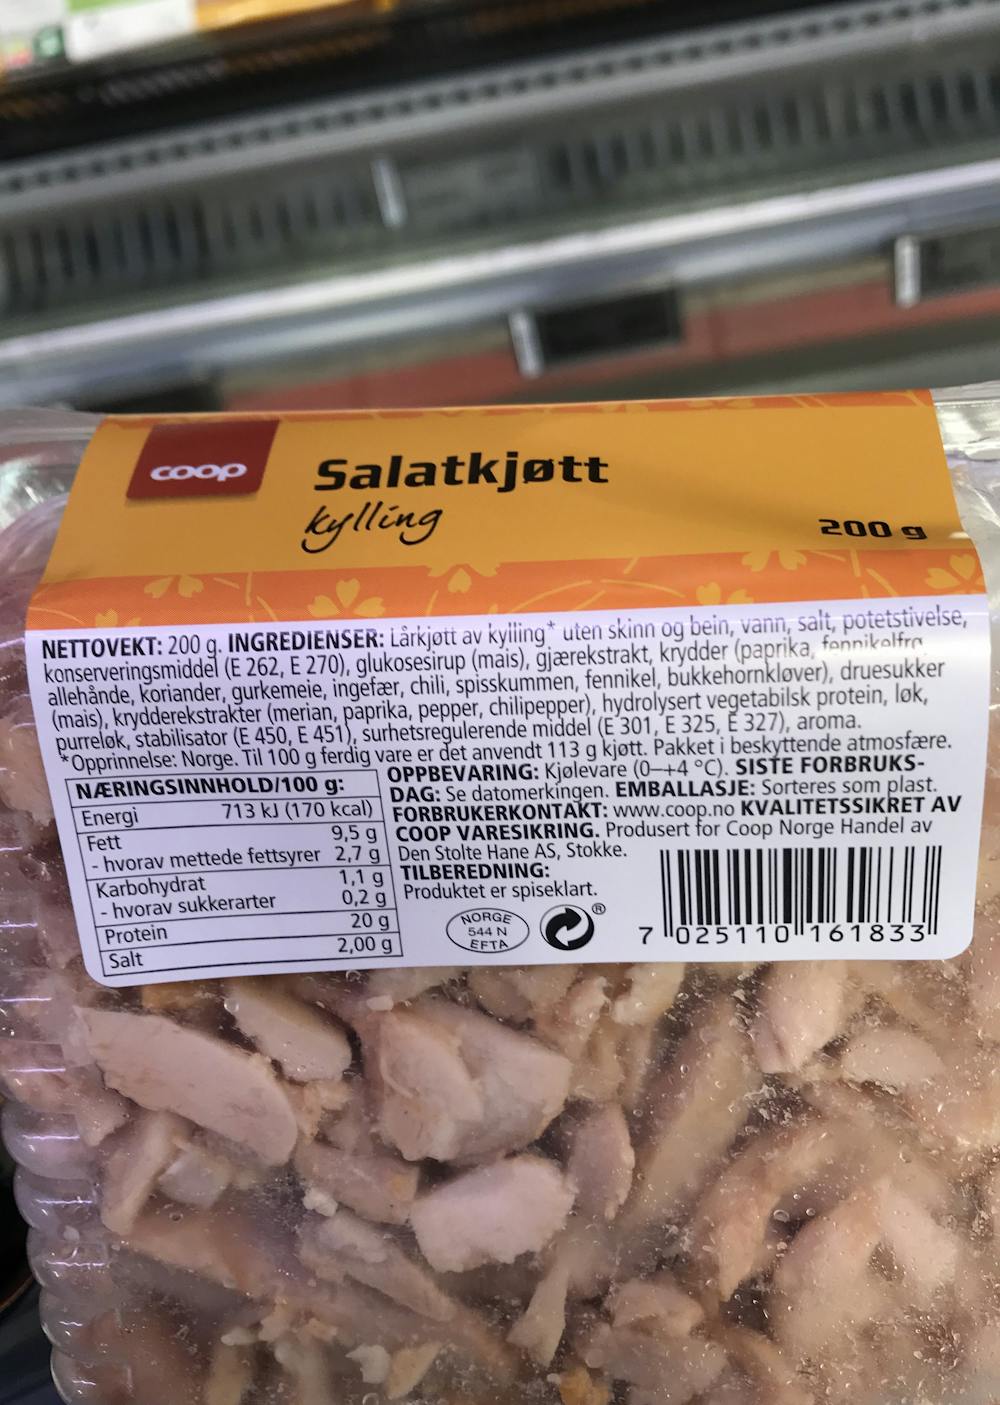 Ingredienslisten til Coop Salatkjøtt kylling